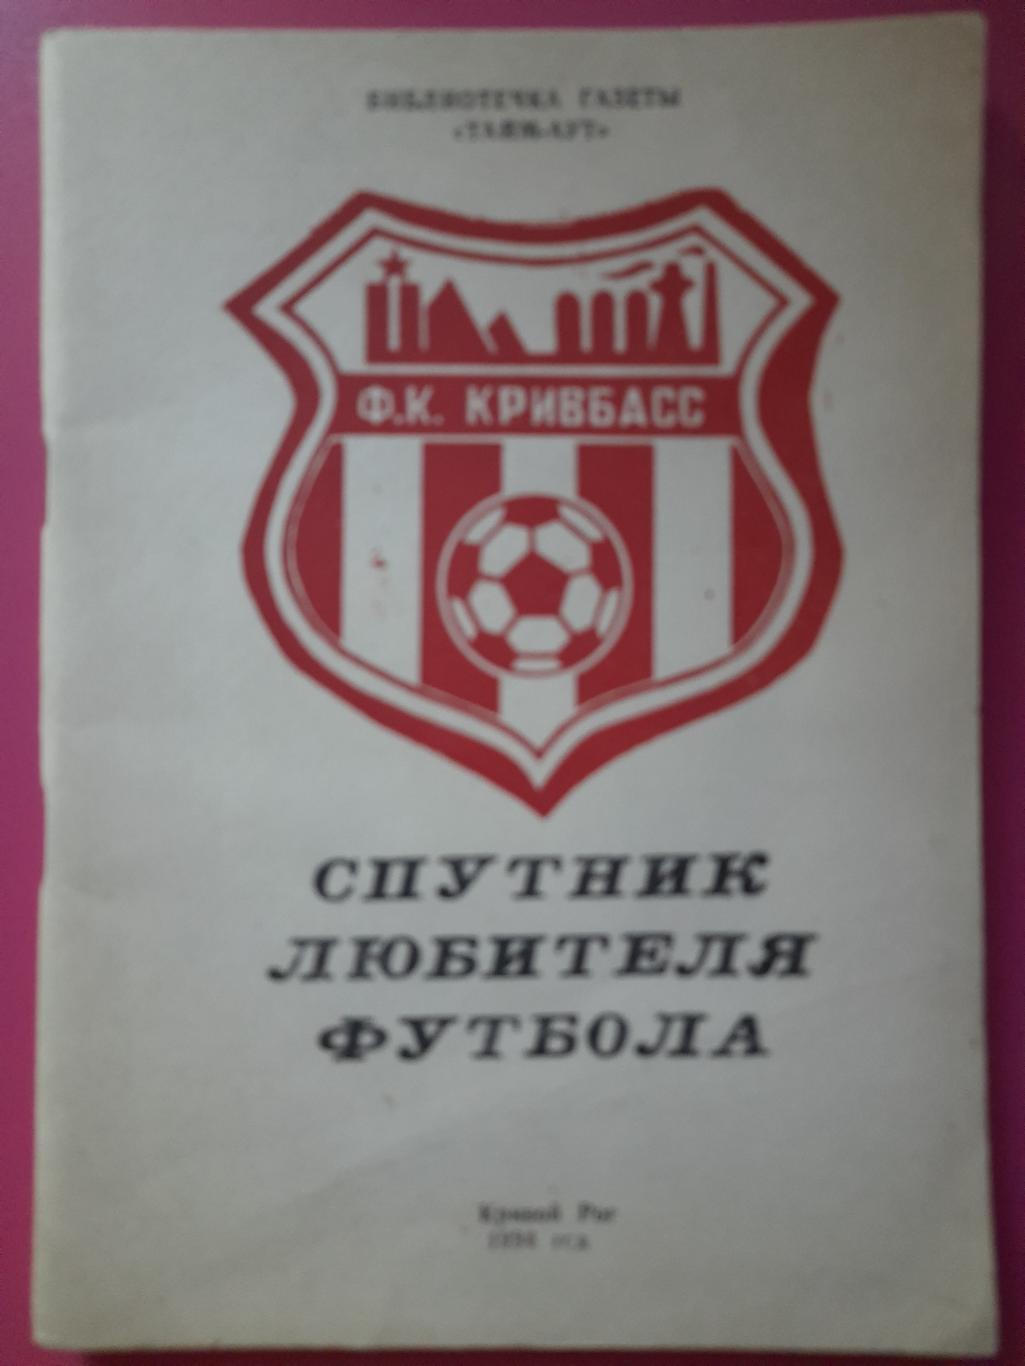 календарь-справочник,Спутник любителя футбола 1994, Кривой Рог.